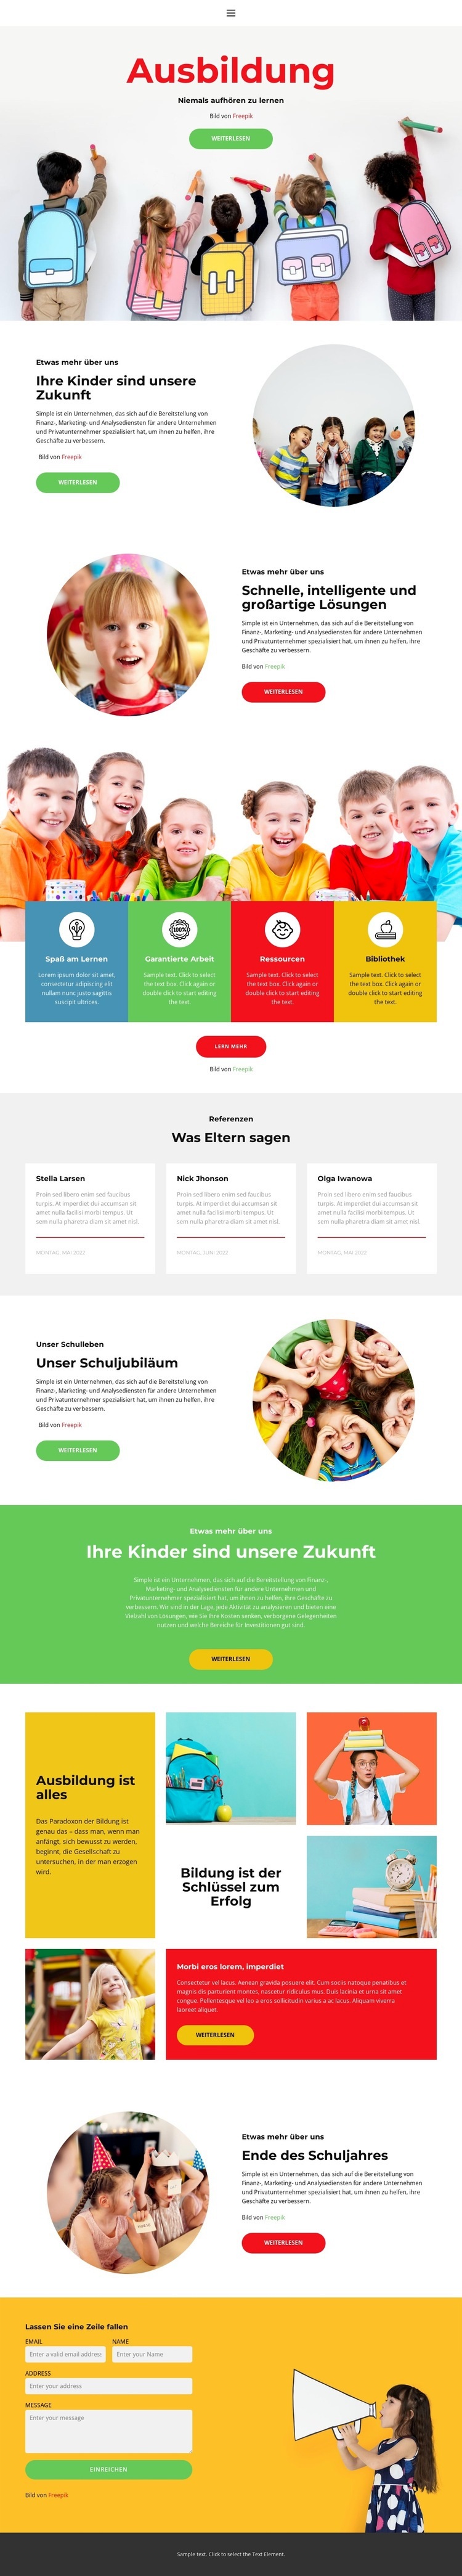 Unser Schulleben HTML Website Builder